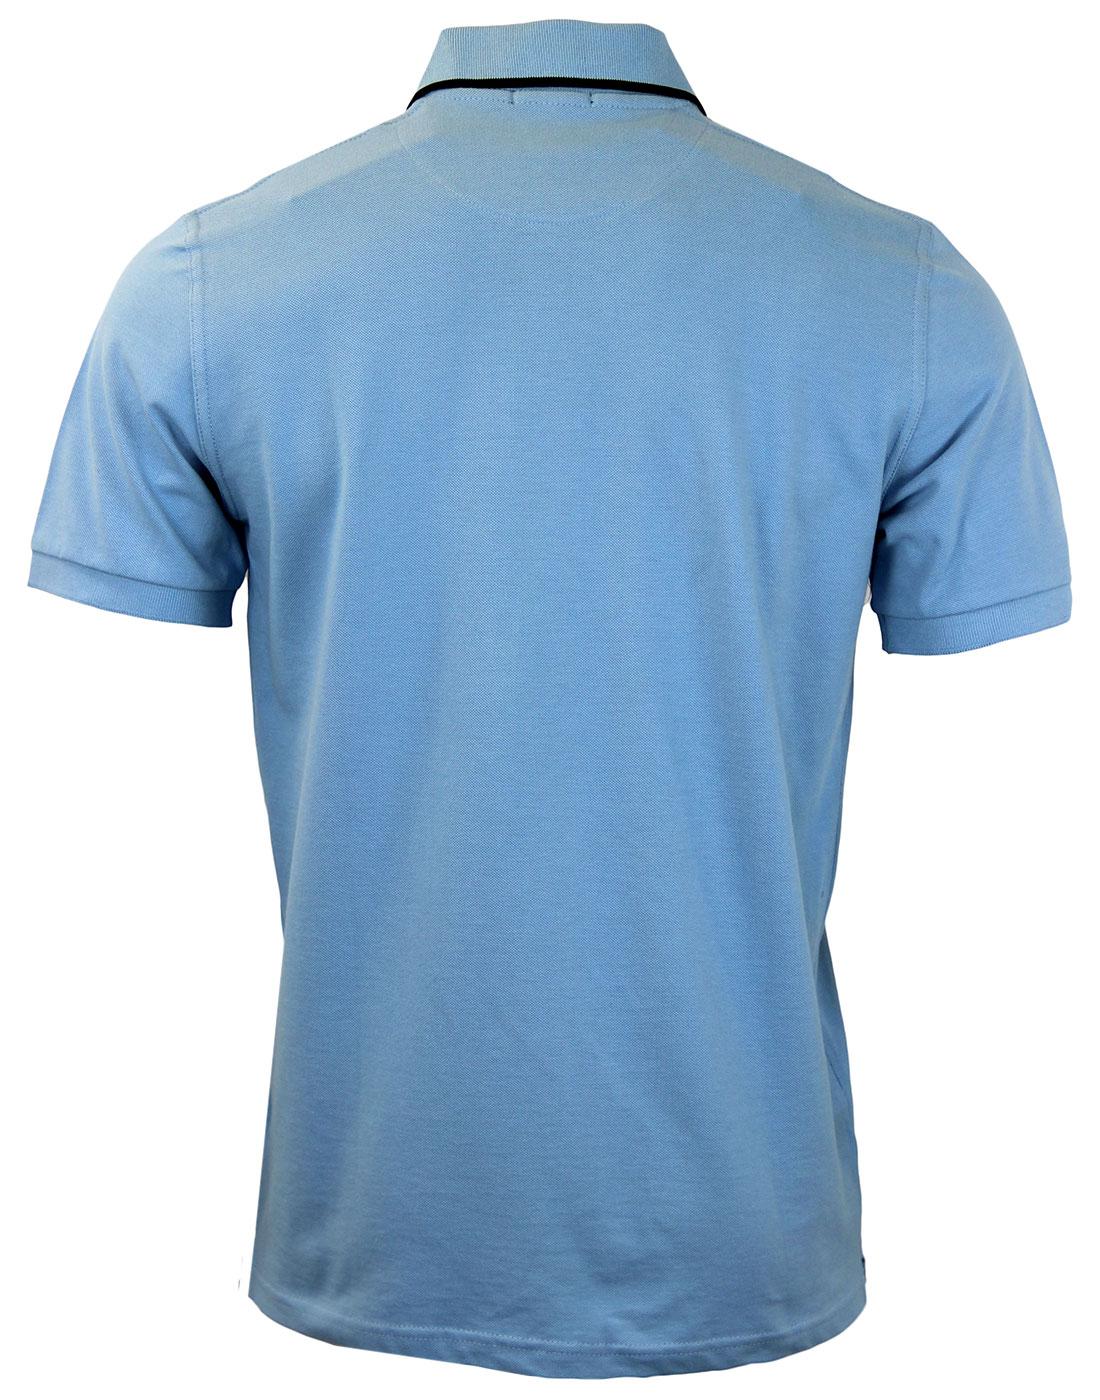 GLOVERALL Made In England Cotton Pique Retro Mod Polo Shirt Azure